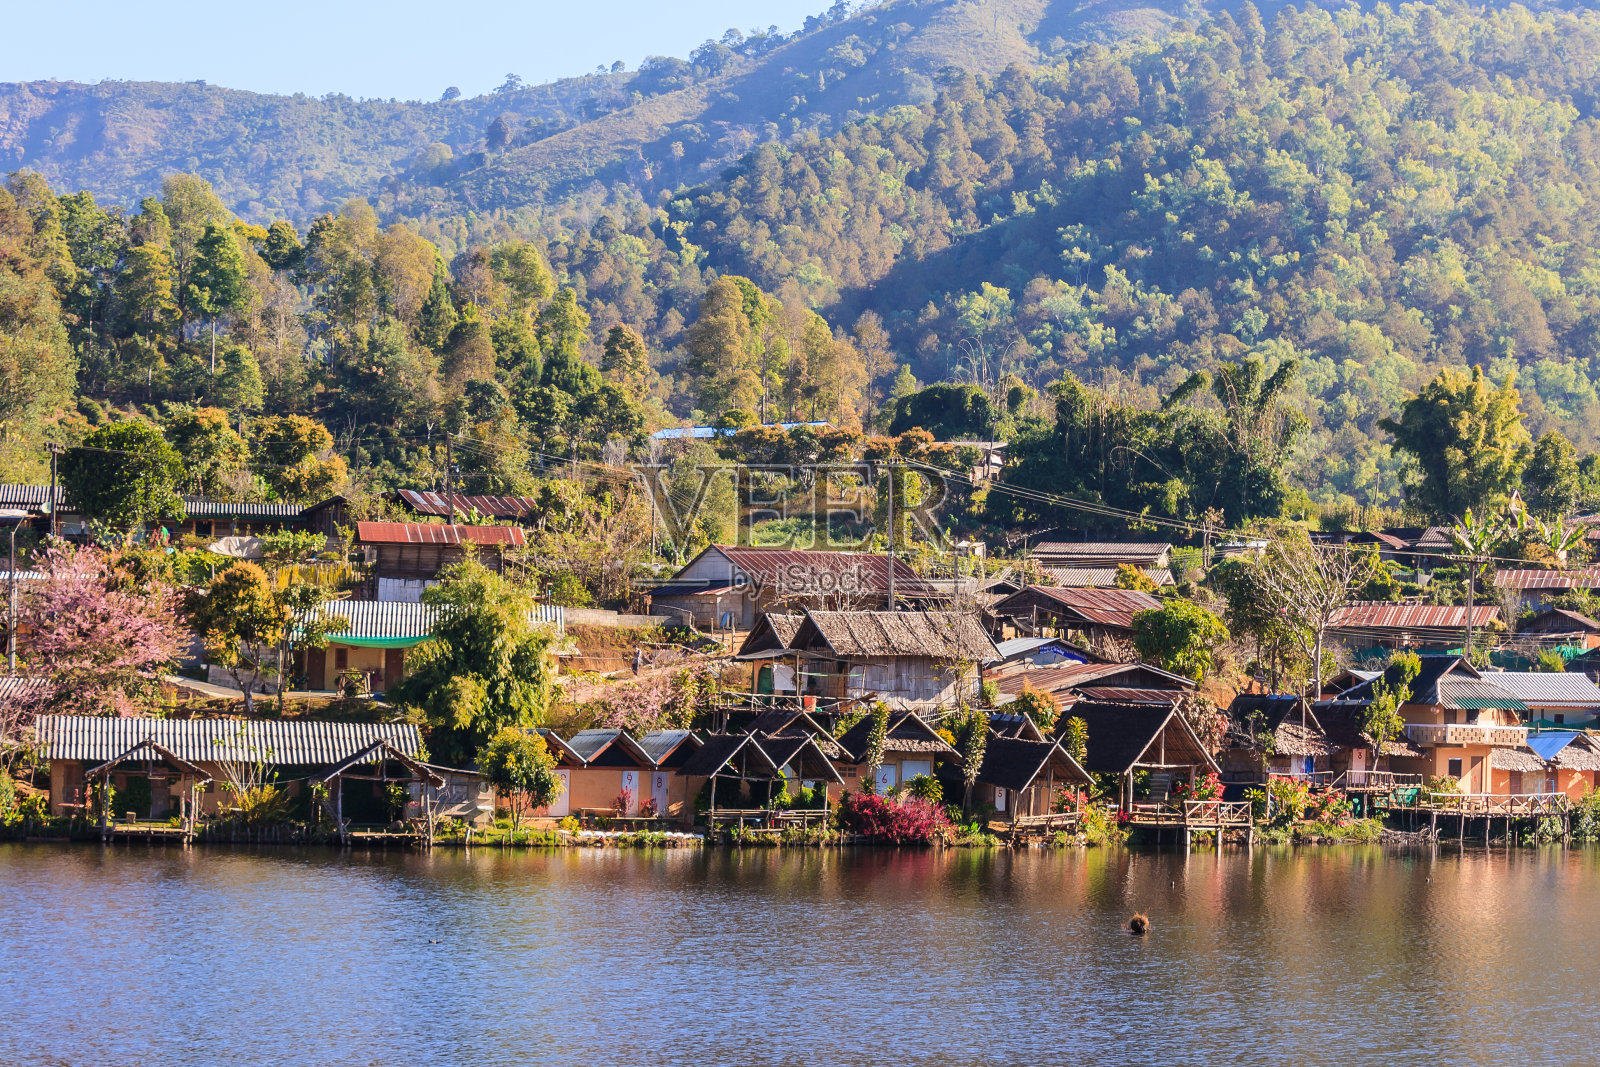 泰国云南华人文化村是云南部落迁居的地方。这个村庄是泰国美洪森最受欢迎的景点之一。游客可以尝试原汁原味的云南中餐，体验云南风情照片摄影图片